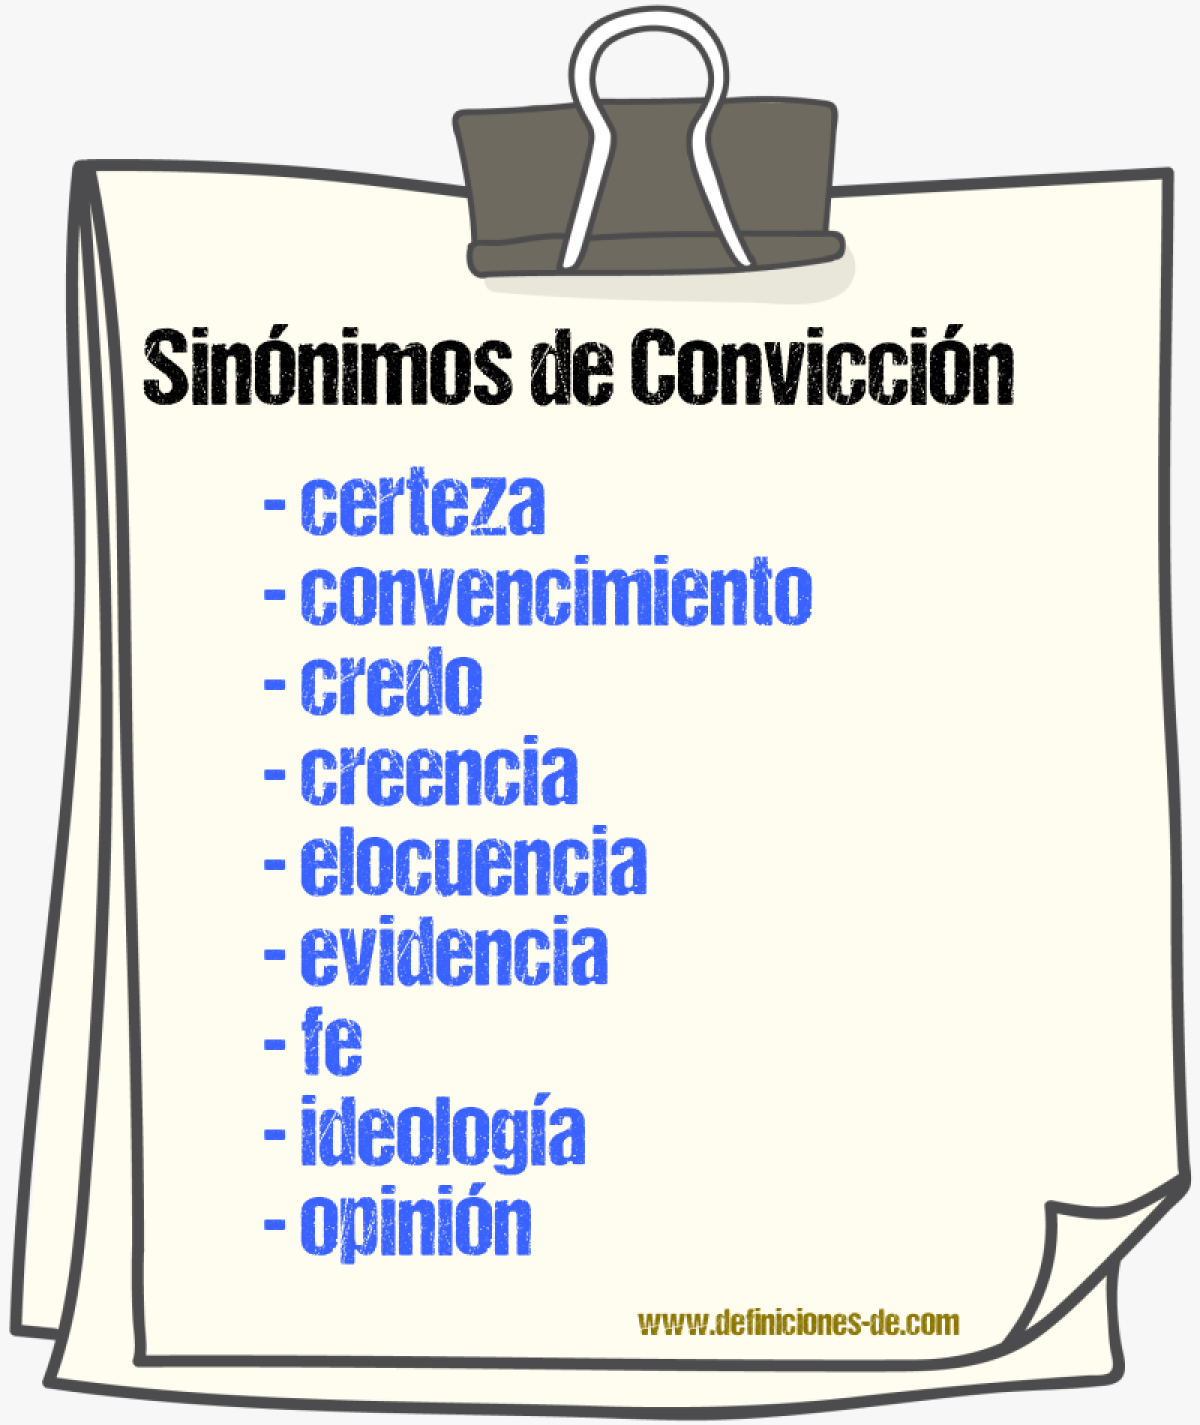 Sinónimos de convicción